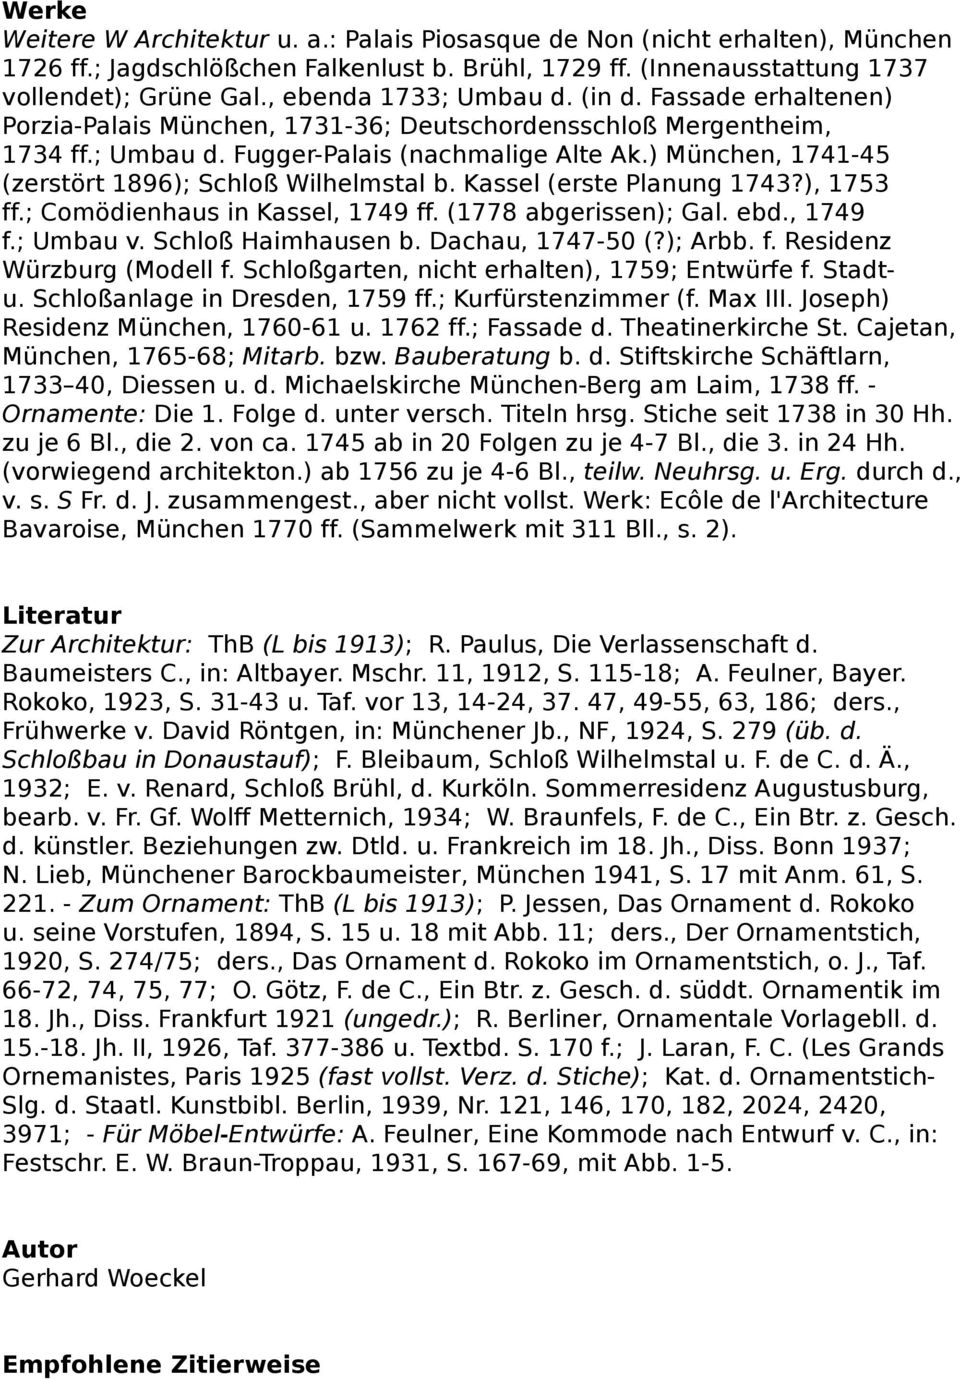 ) München, 1741-45 (zerstört 1896); Schloß Wilhelmstal b. Kassel (erste Planung 1743?), 1753 ff.; Comödienhaus in Kassel, 1749 ff. (1778 abgerissen); Gal. ebd., 1749 f.; Umbau v. Schloß Haimhausen b.